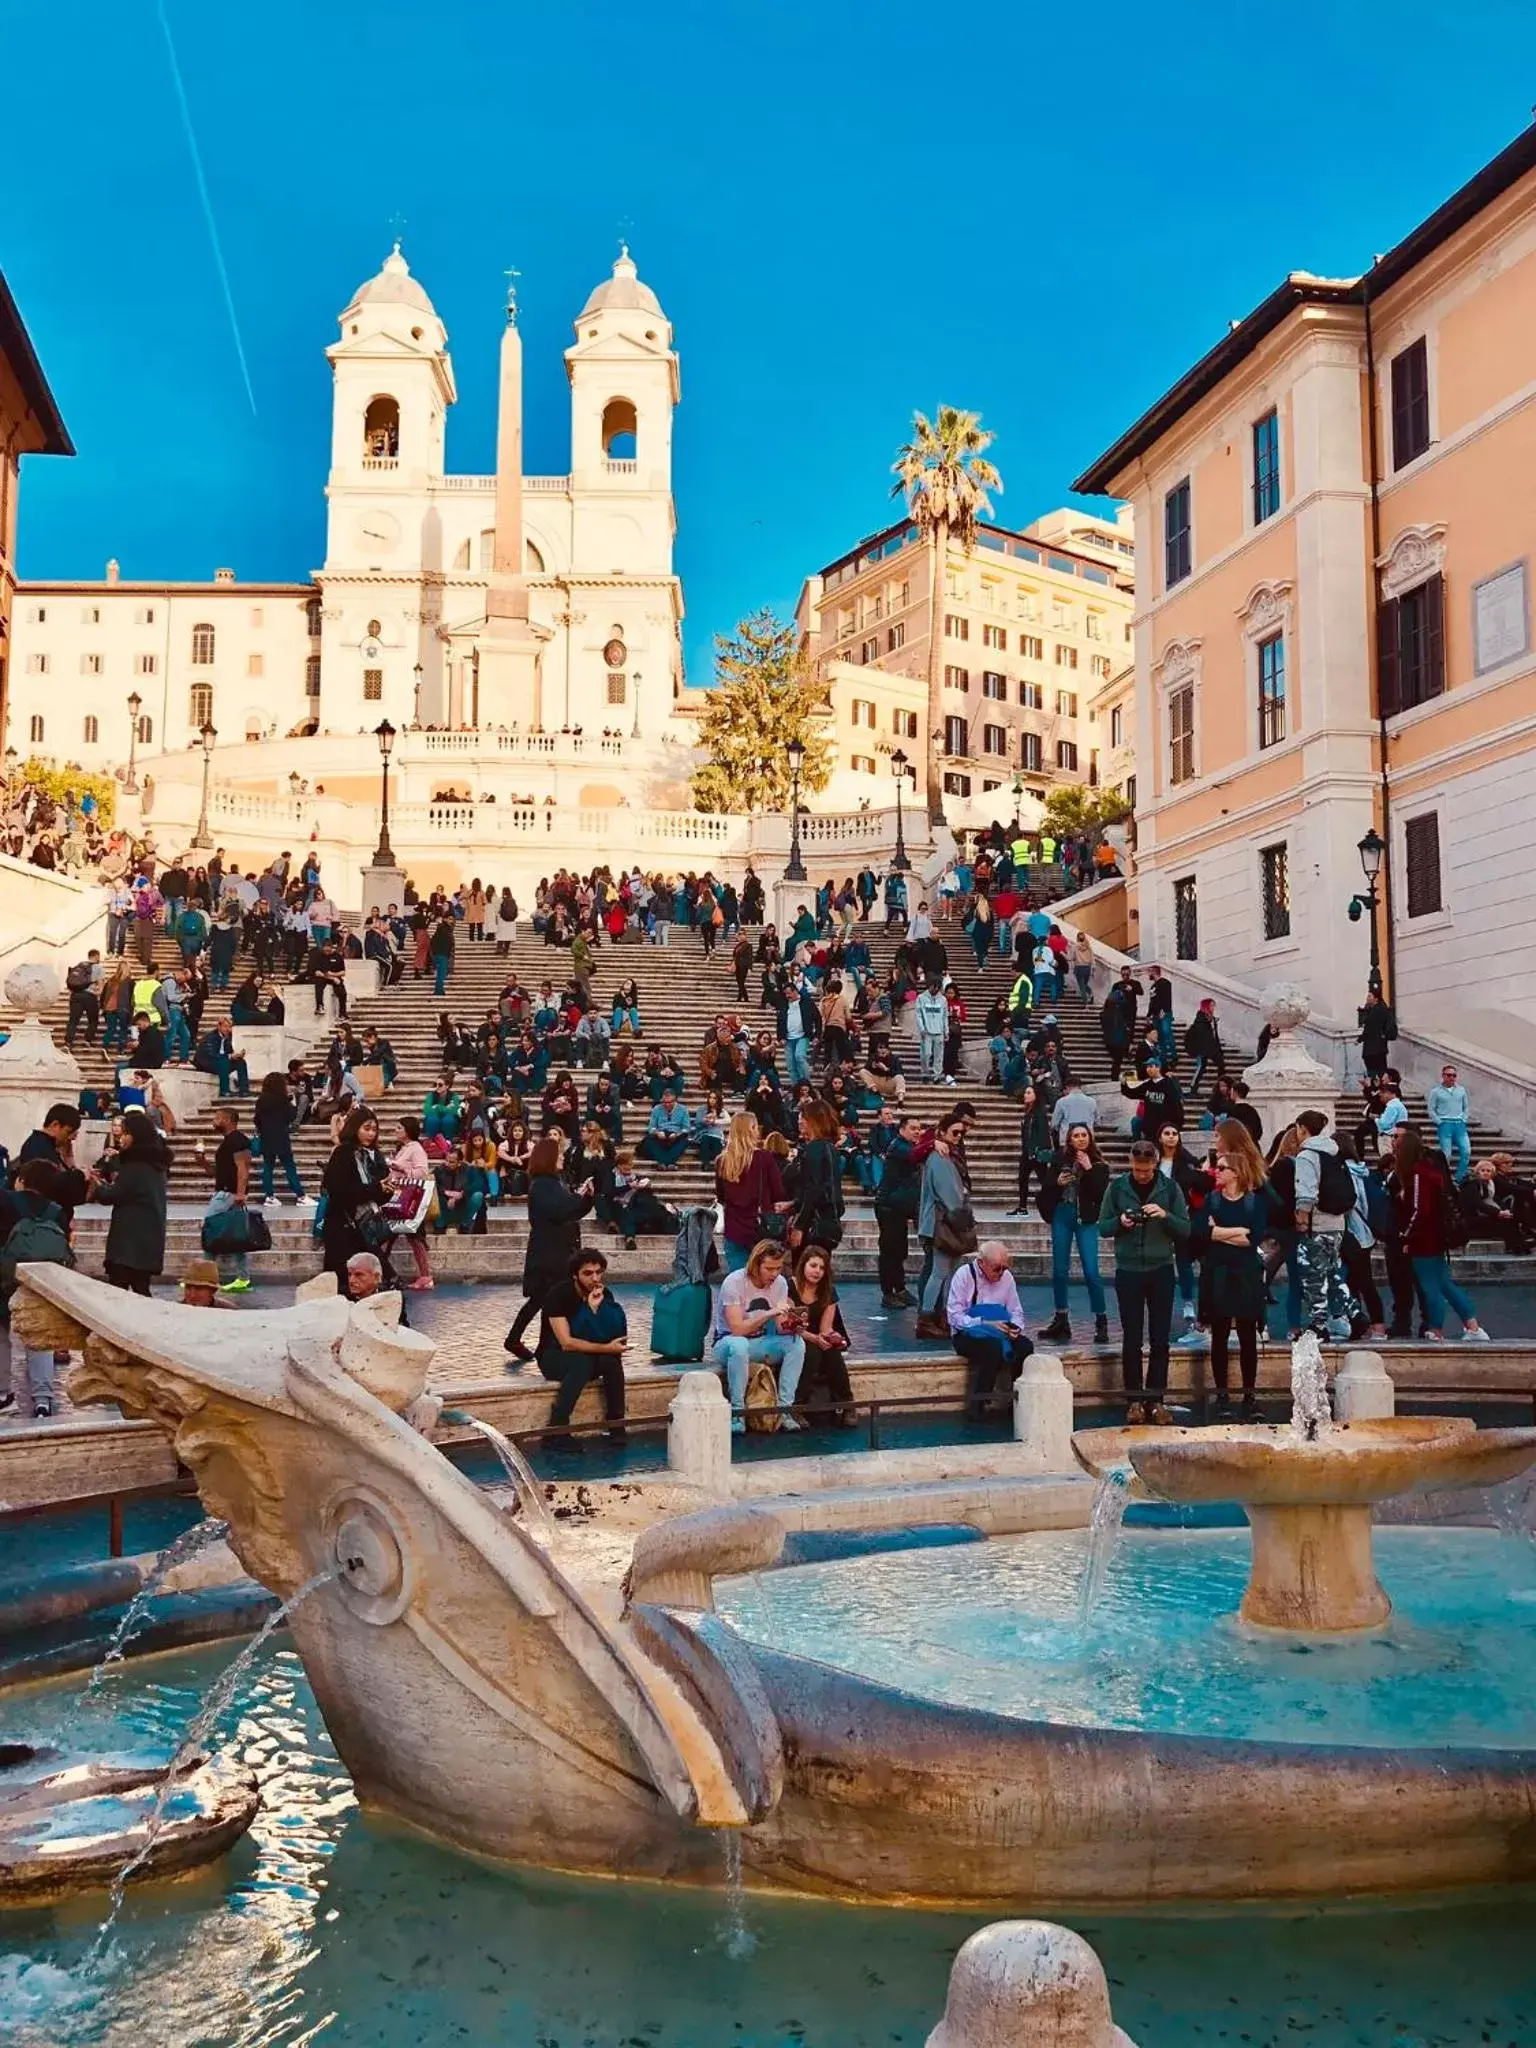 Neighbourhood in 900 Piazza del Popolo